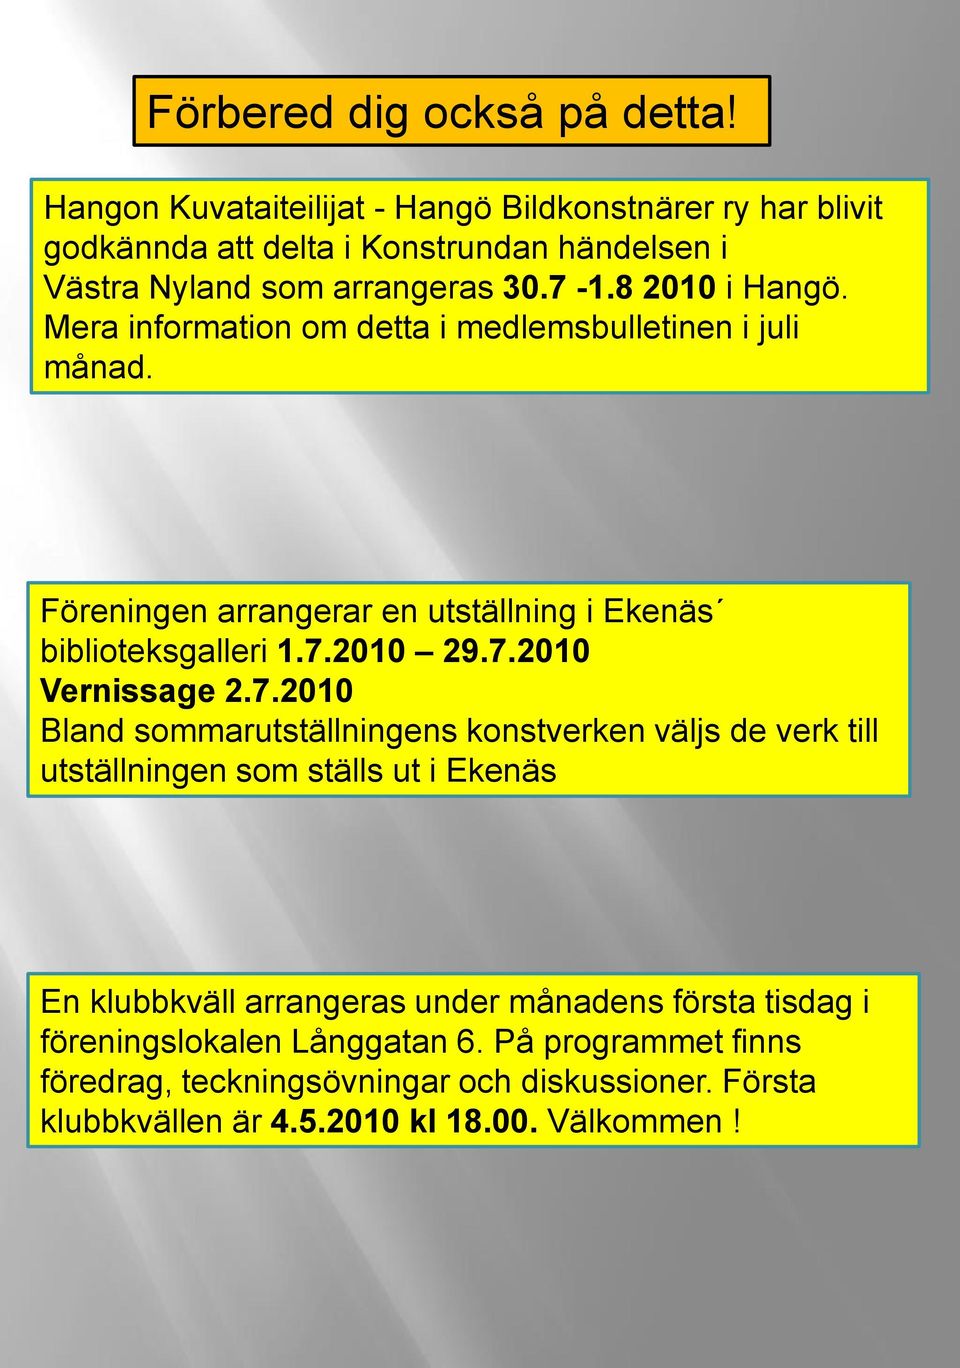 Mera information om detta i medlemsbulletinen i juli månad. Föreningen arrangerar en utställning i Ekenäs biblioteksgalleri 1.7.